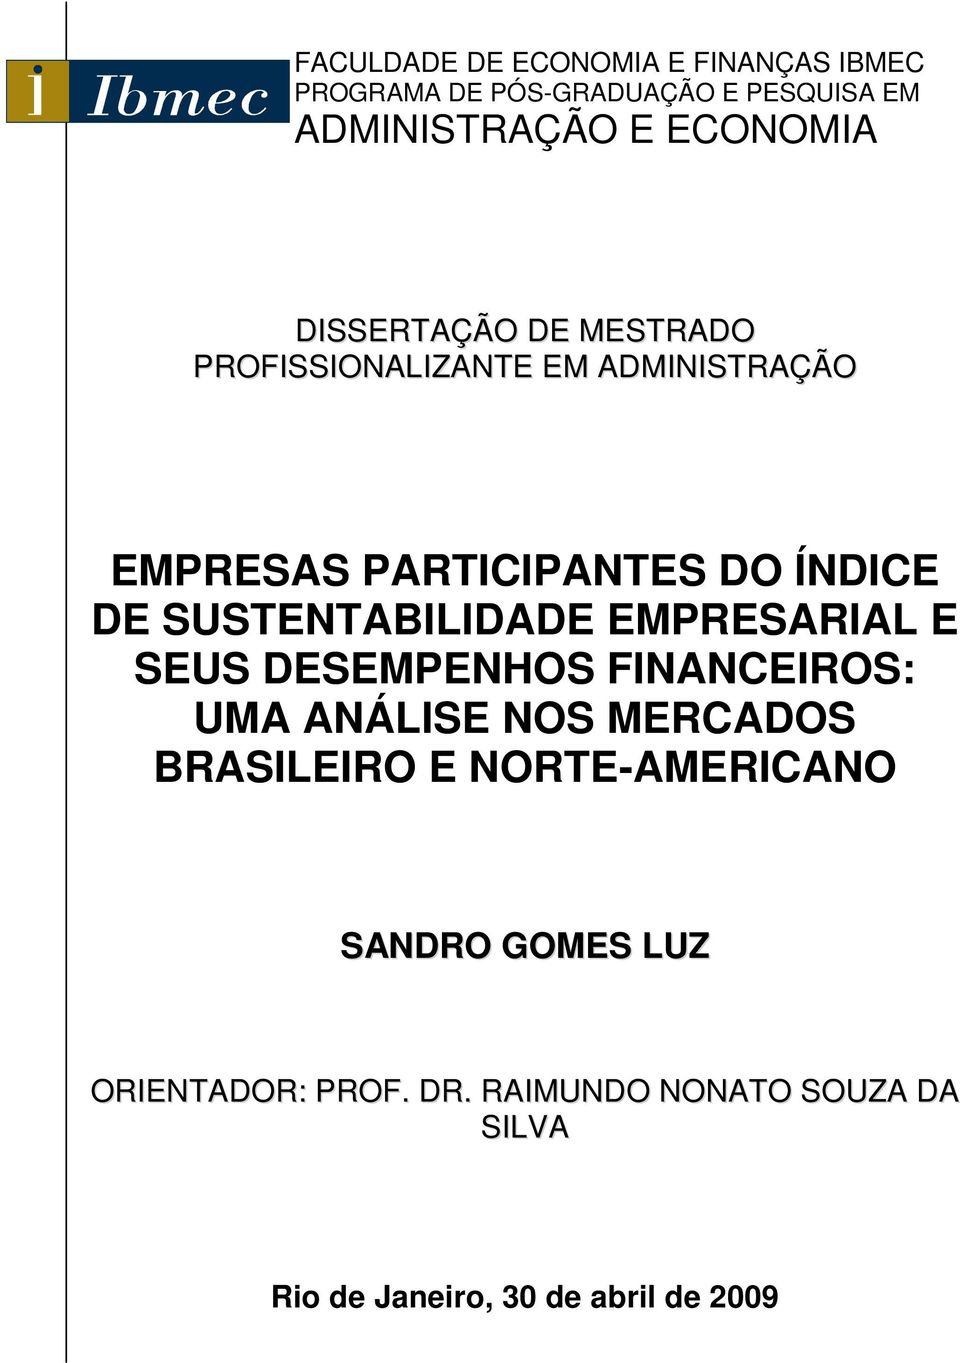 SUSTENTABILIDADE EMPRESARIAL E SEUS DESEMPENHOS FINANCEIROS: UMA ANÁLISE NOS MERCADOS BRASILEIRO E